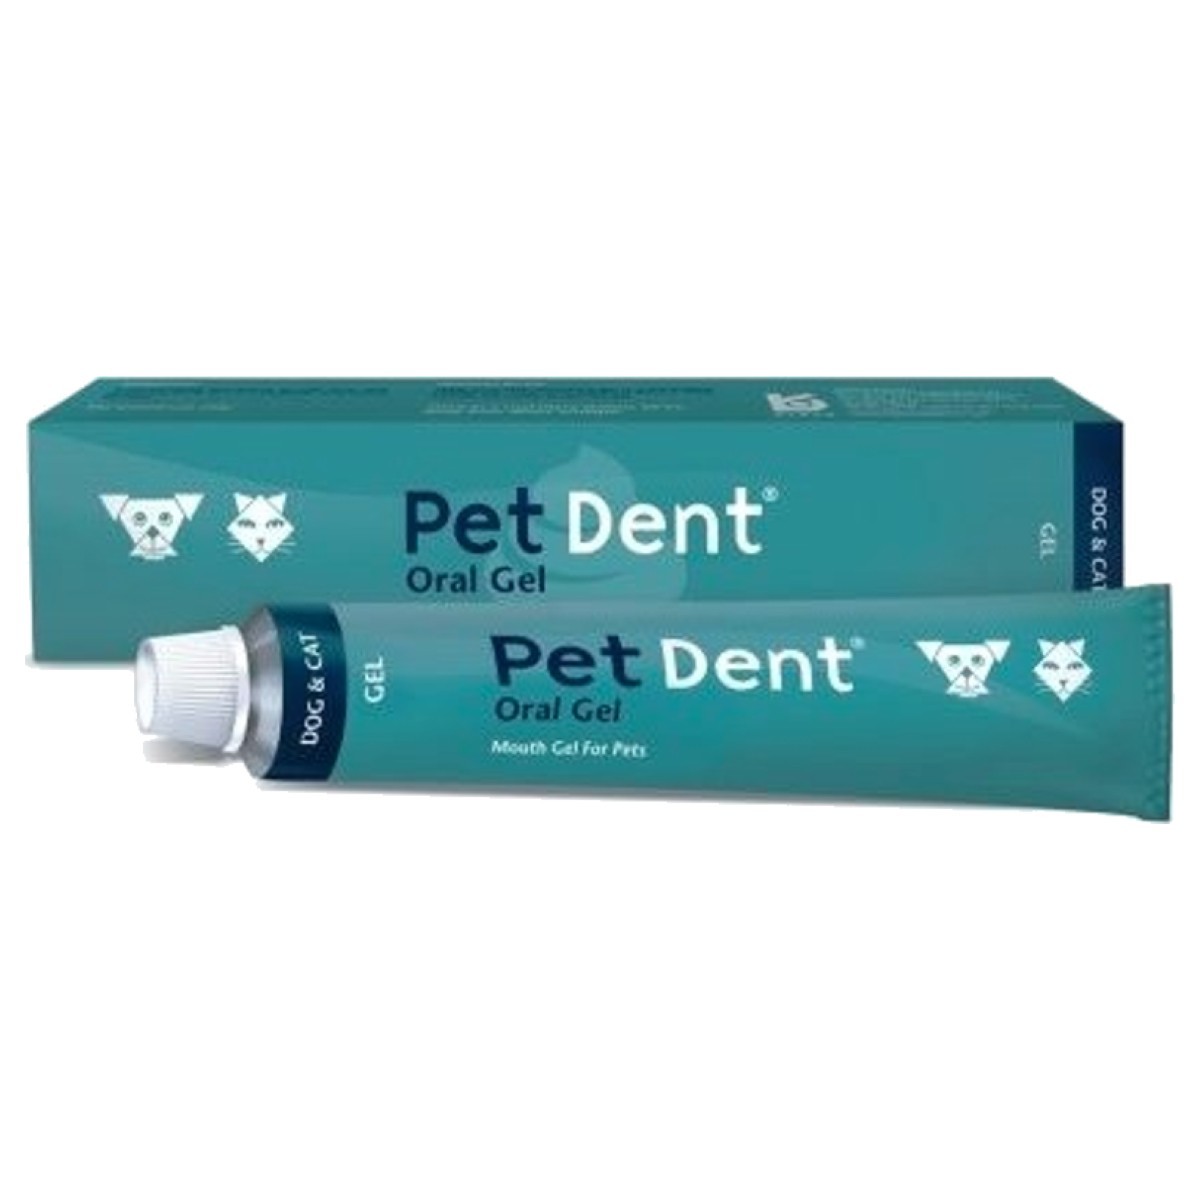 Pet Dent Oral Gel 50g